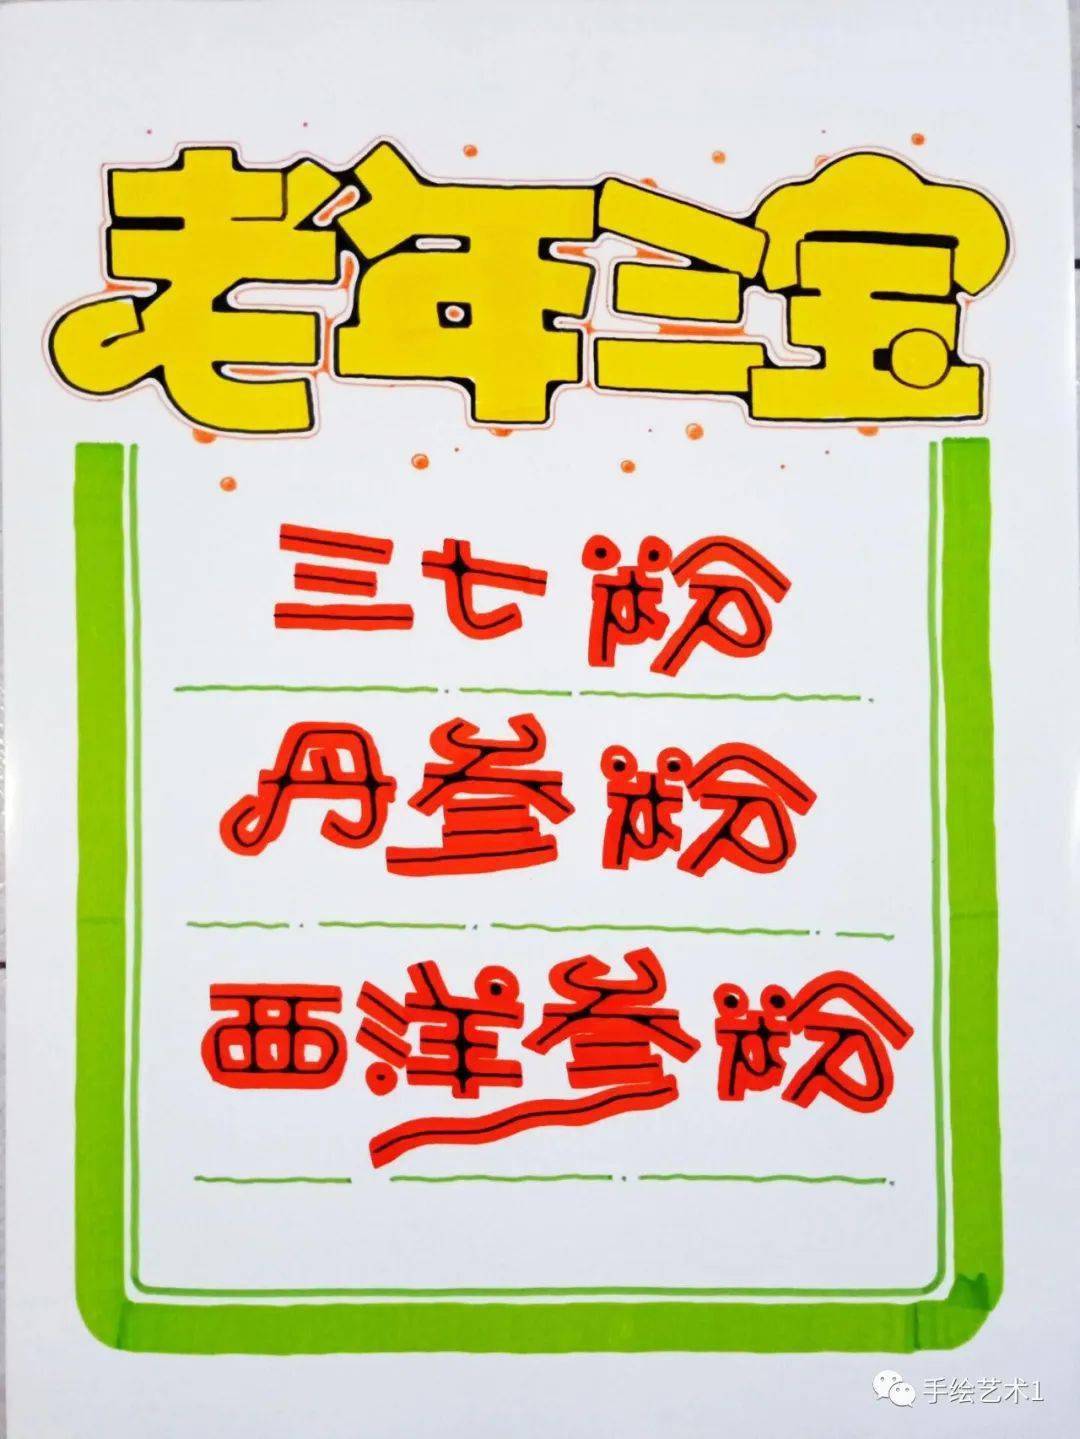 【作品解析】门店中药《老年三宝》手绘pop海报教程及模板分享!